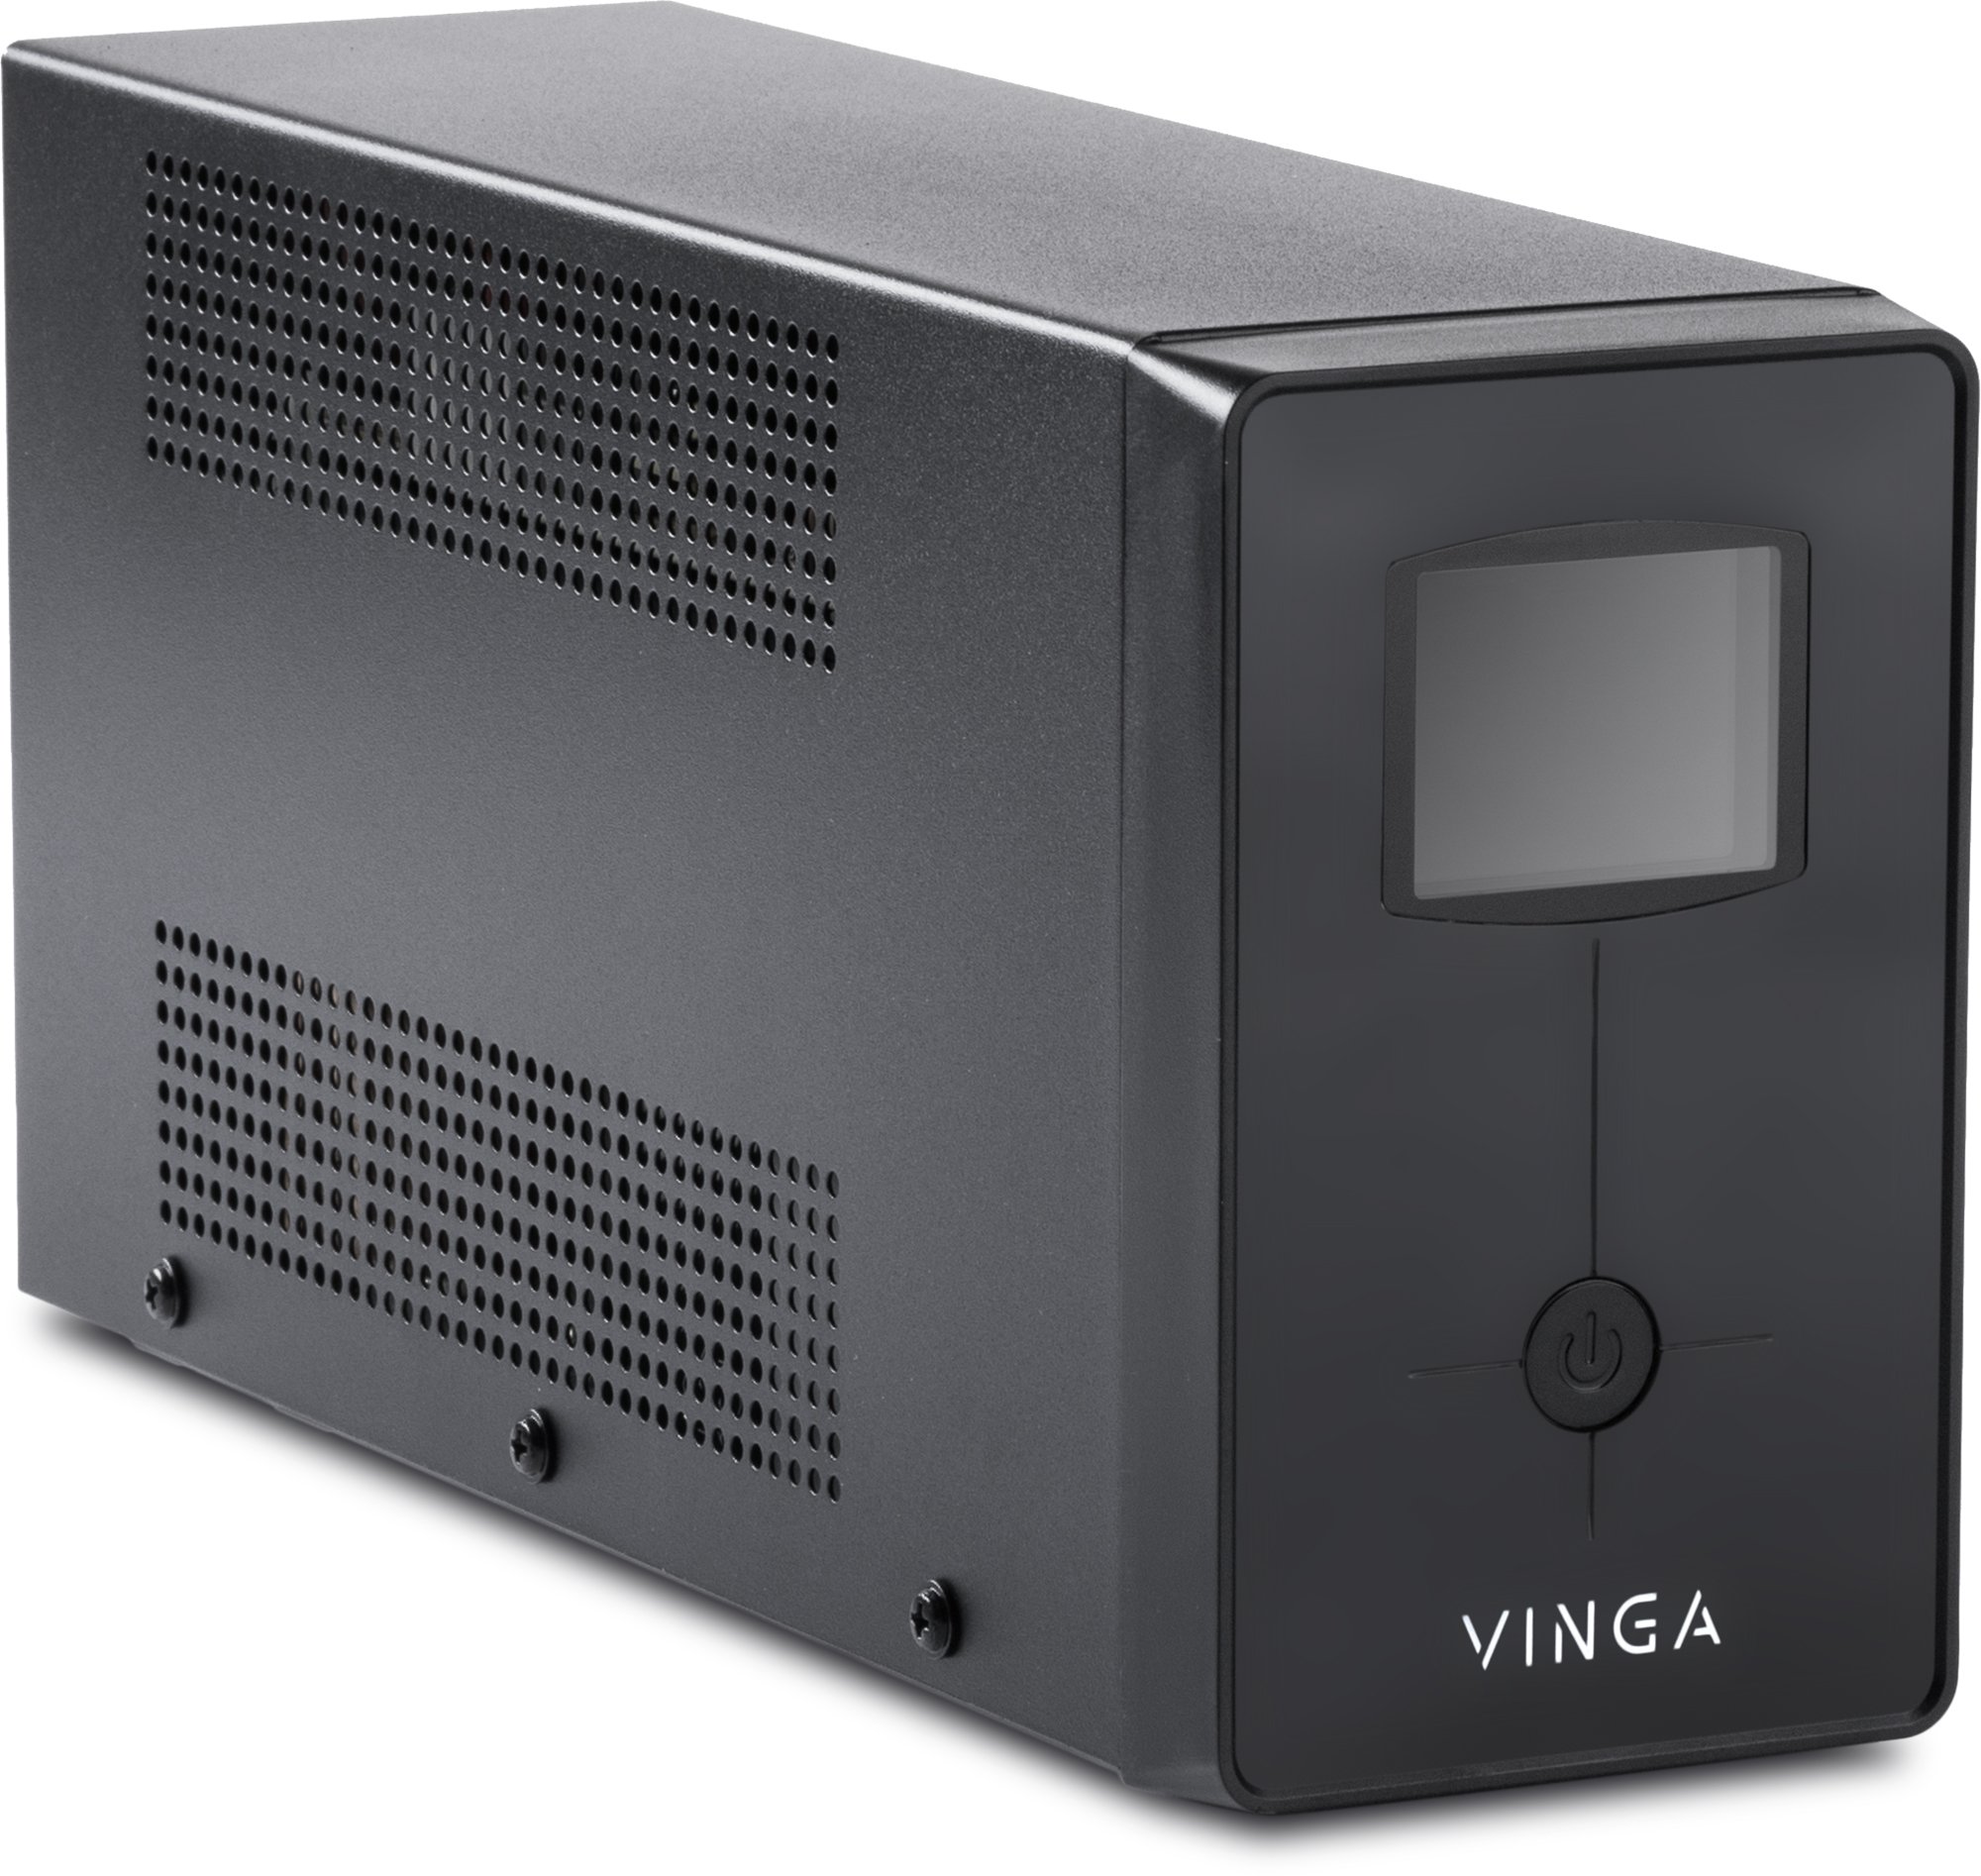 Источник бесперебойного питания Vinga LCD 2000VA (VPC-2000M) отзывы - изображения 5